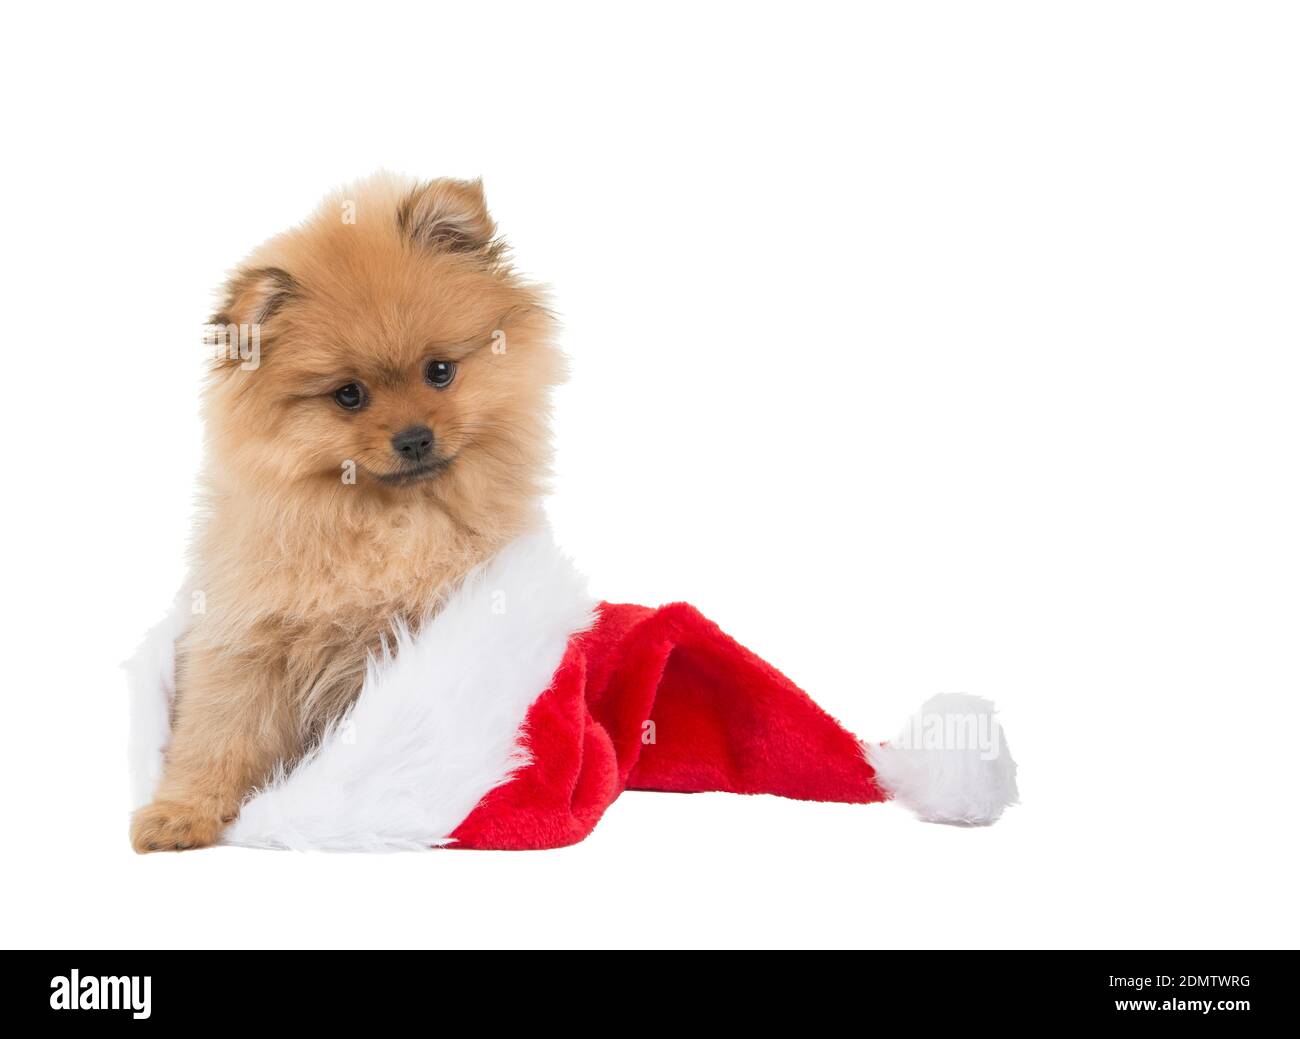 Pomeranian dog hat Banque d'images détourées - Alamy